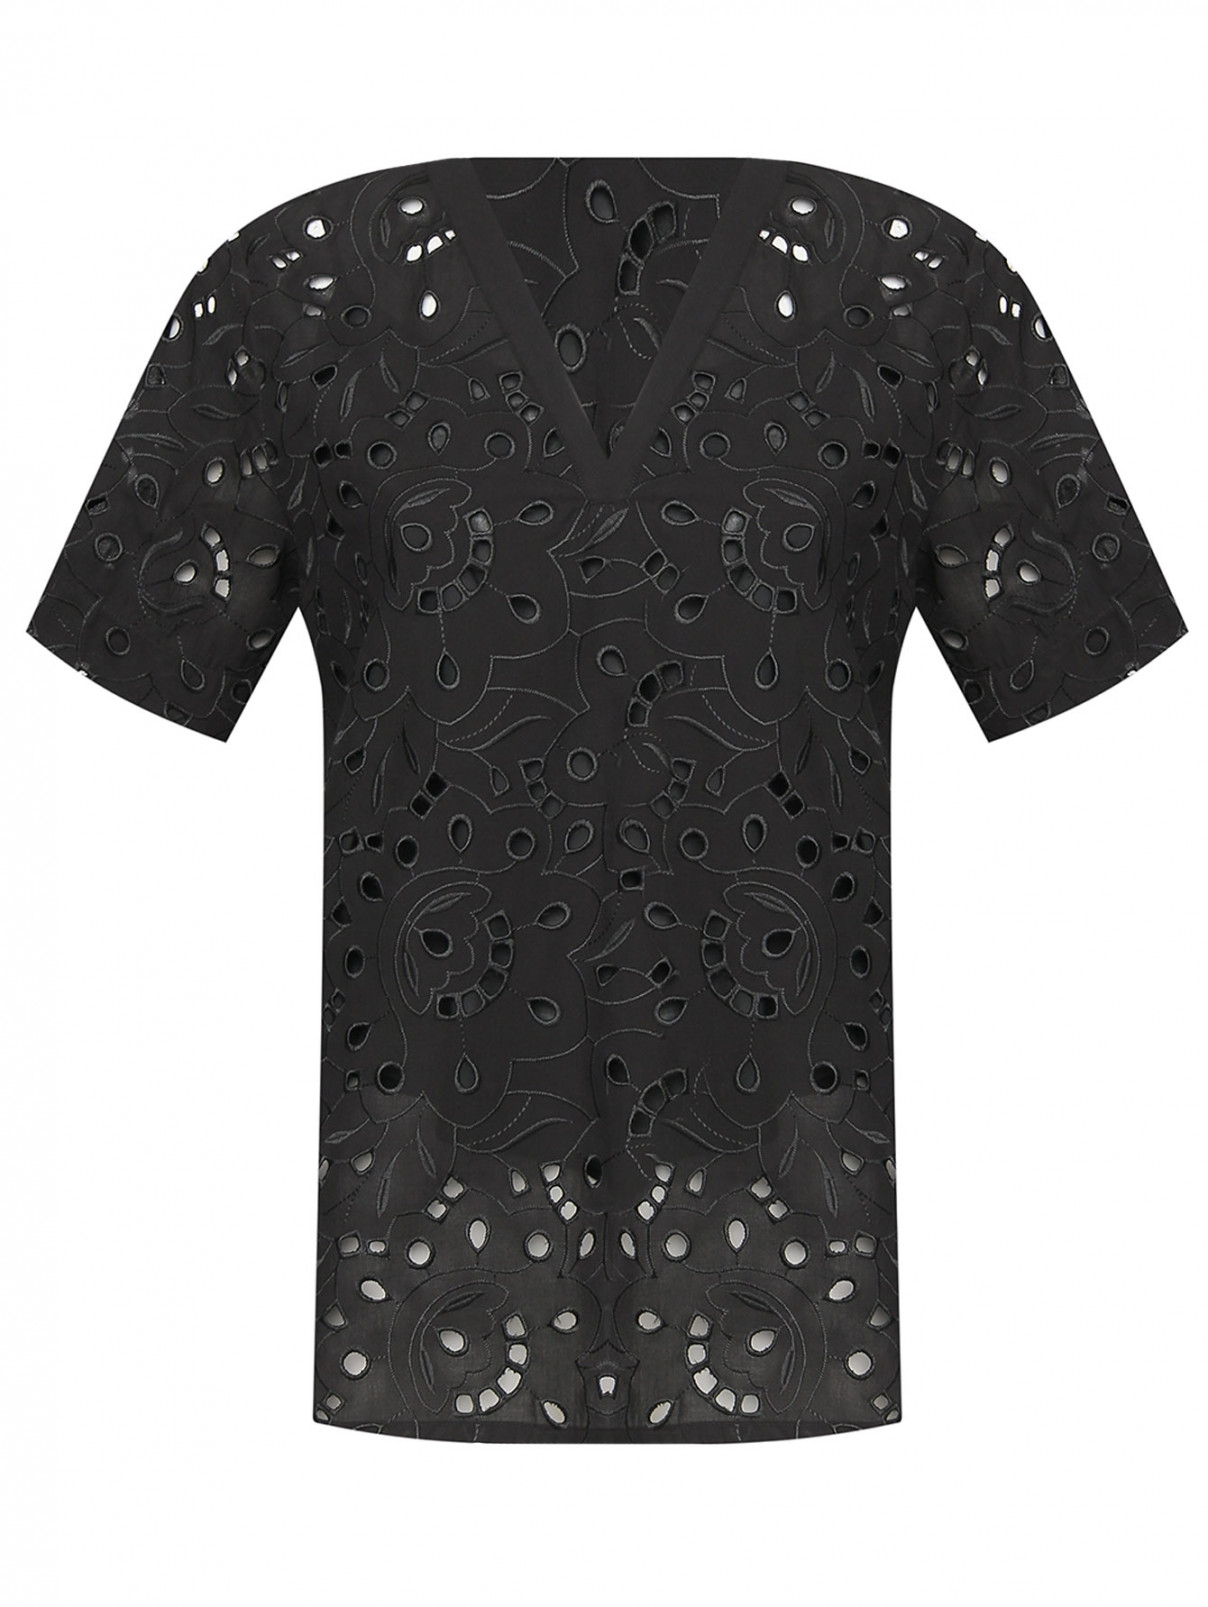 Блуза из хлопка с вышивкой ришелье Marina Rinaldi  –  Общий вид  – Цвет:  Черный